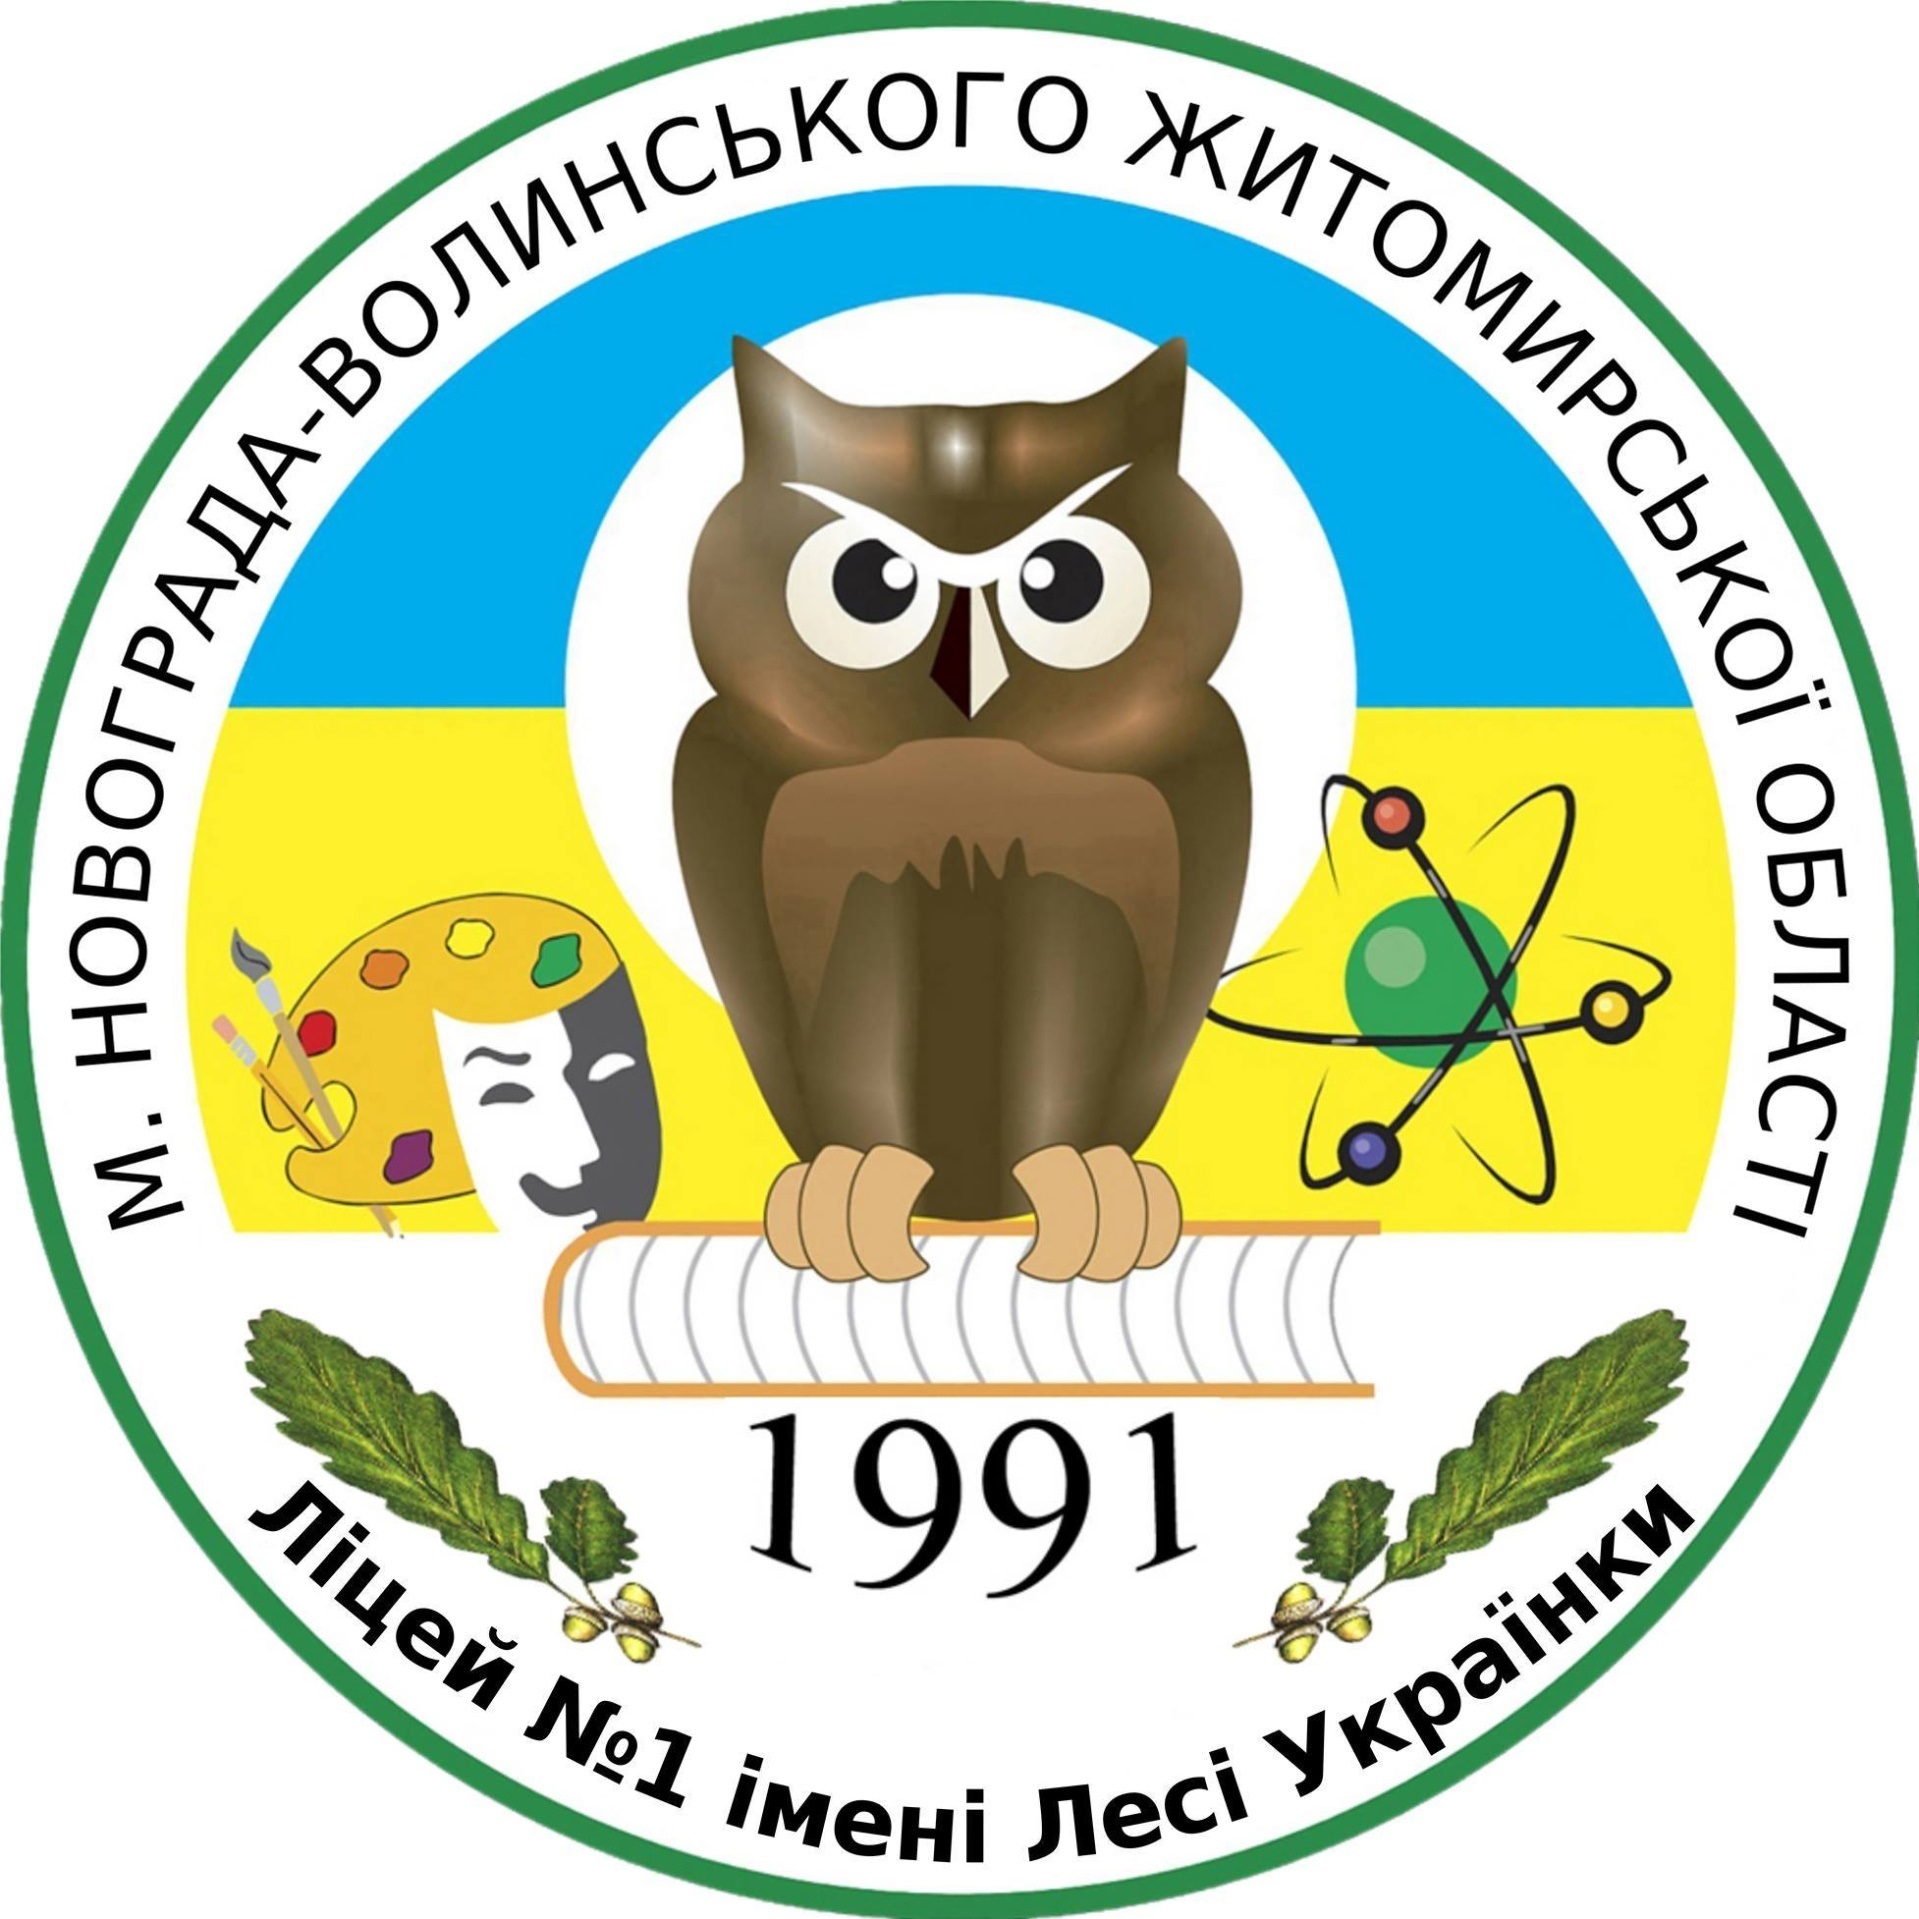 19 жовтня – 30-а річниця з Дня відкриття першої в Житомирській області міської гімназії імені Лесі Українки